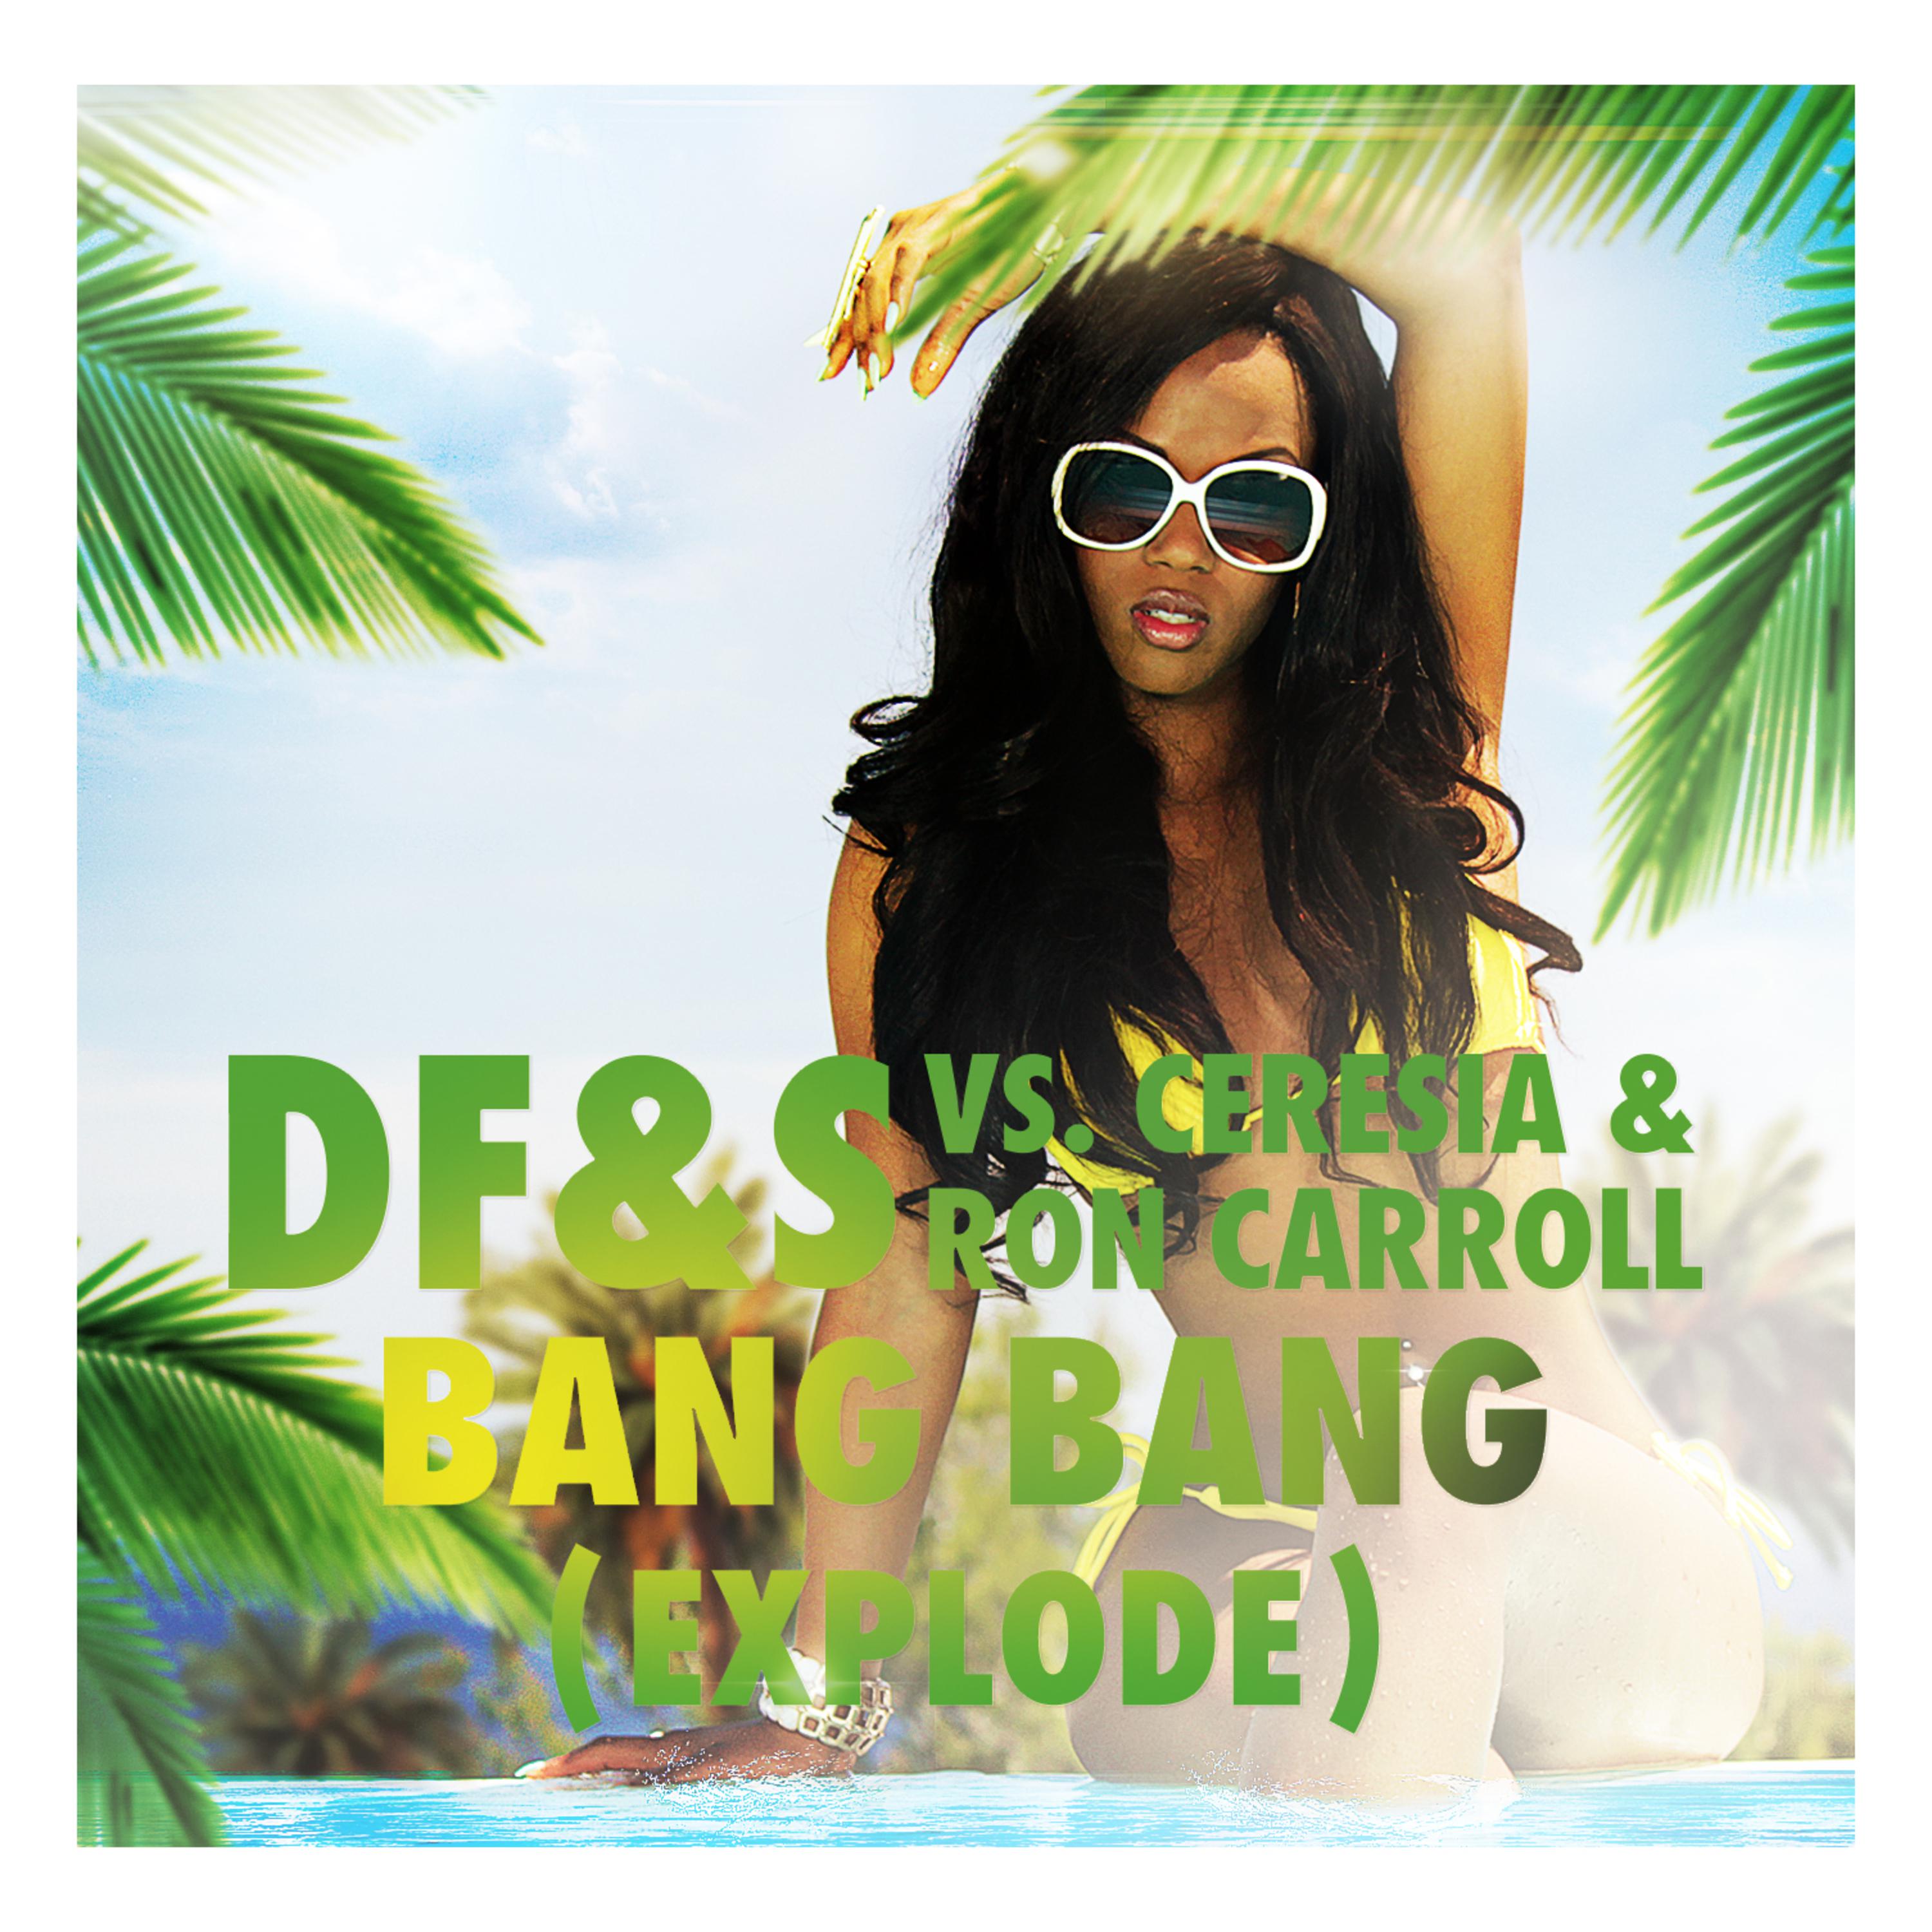 Bang Bang (Explode) (CJ Stone Club Mix)